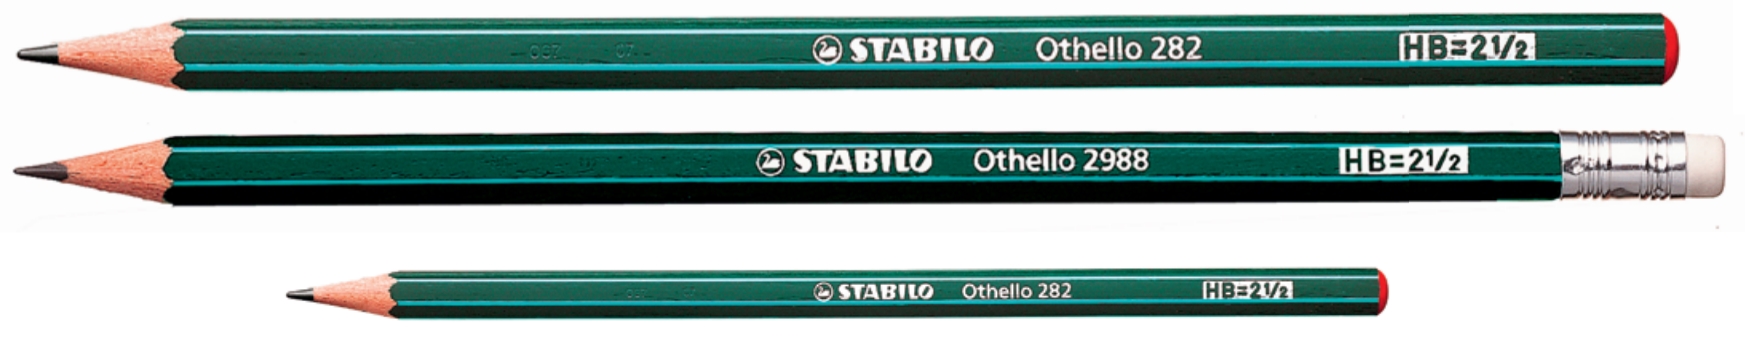 Ołówek STABILO Othello